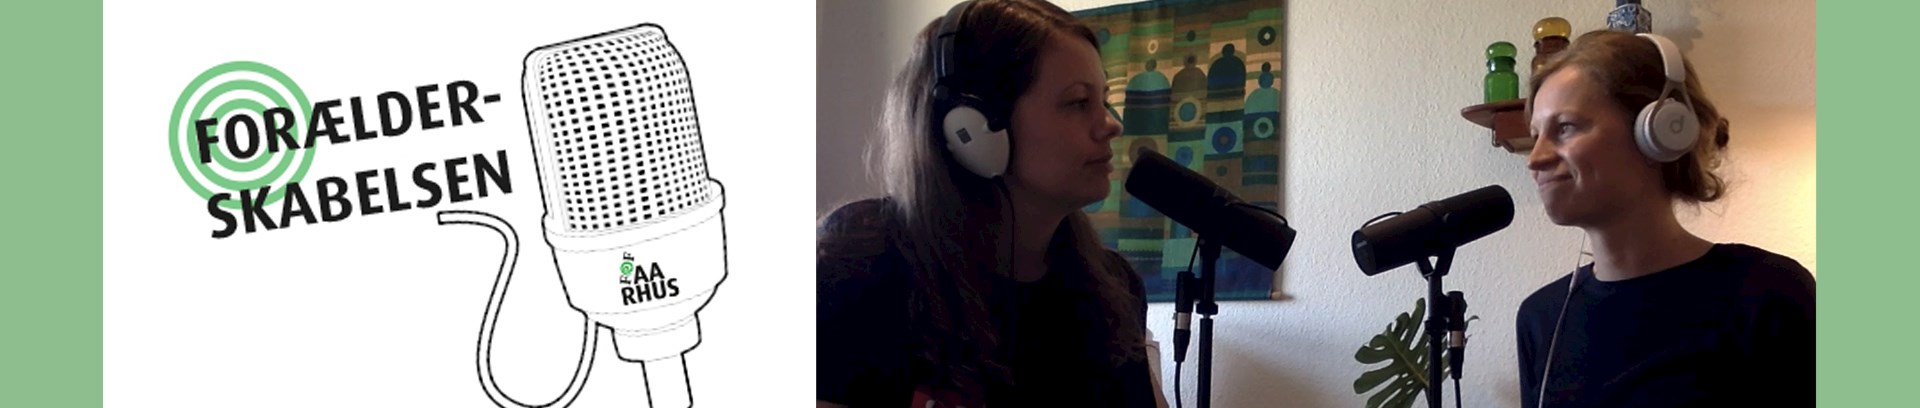 FOF Aarhus | Podcast | Forælderskabelsen | Vært, jordemoder og pædagogisk antropolog Nanna Cæcilie Thrane og søvnekspert Karen Kildahl